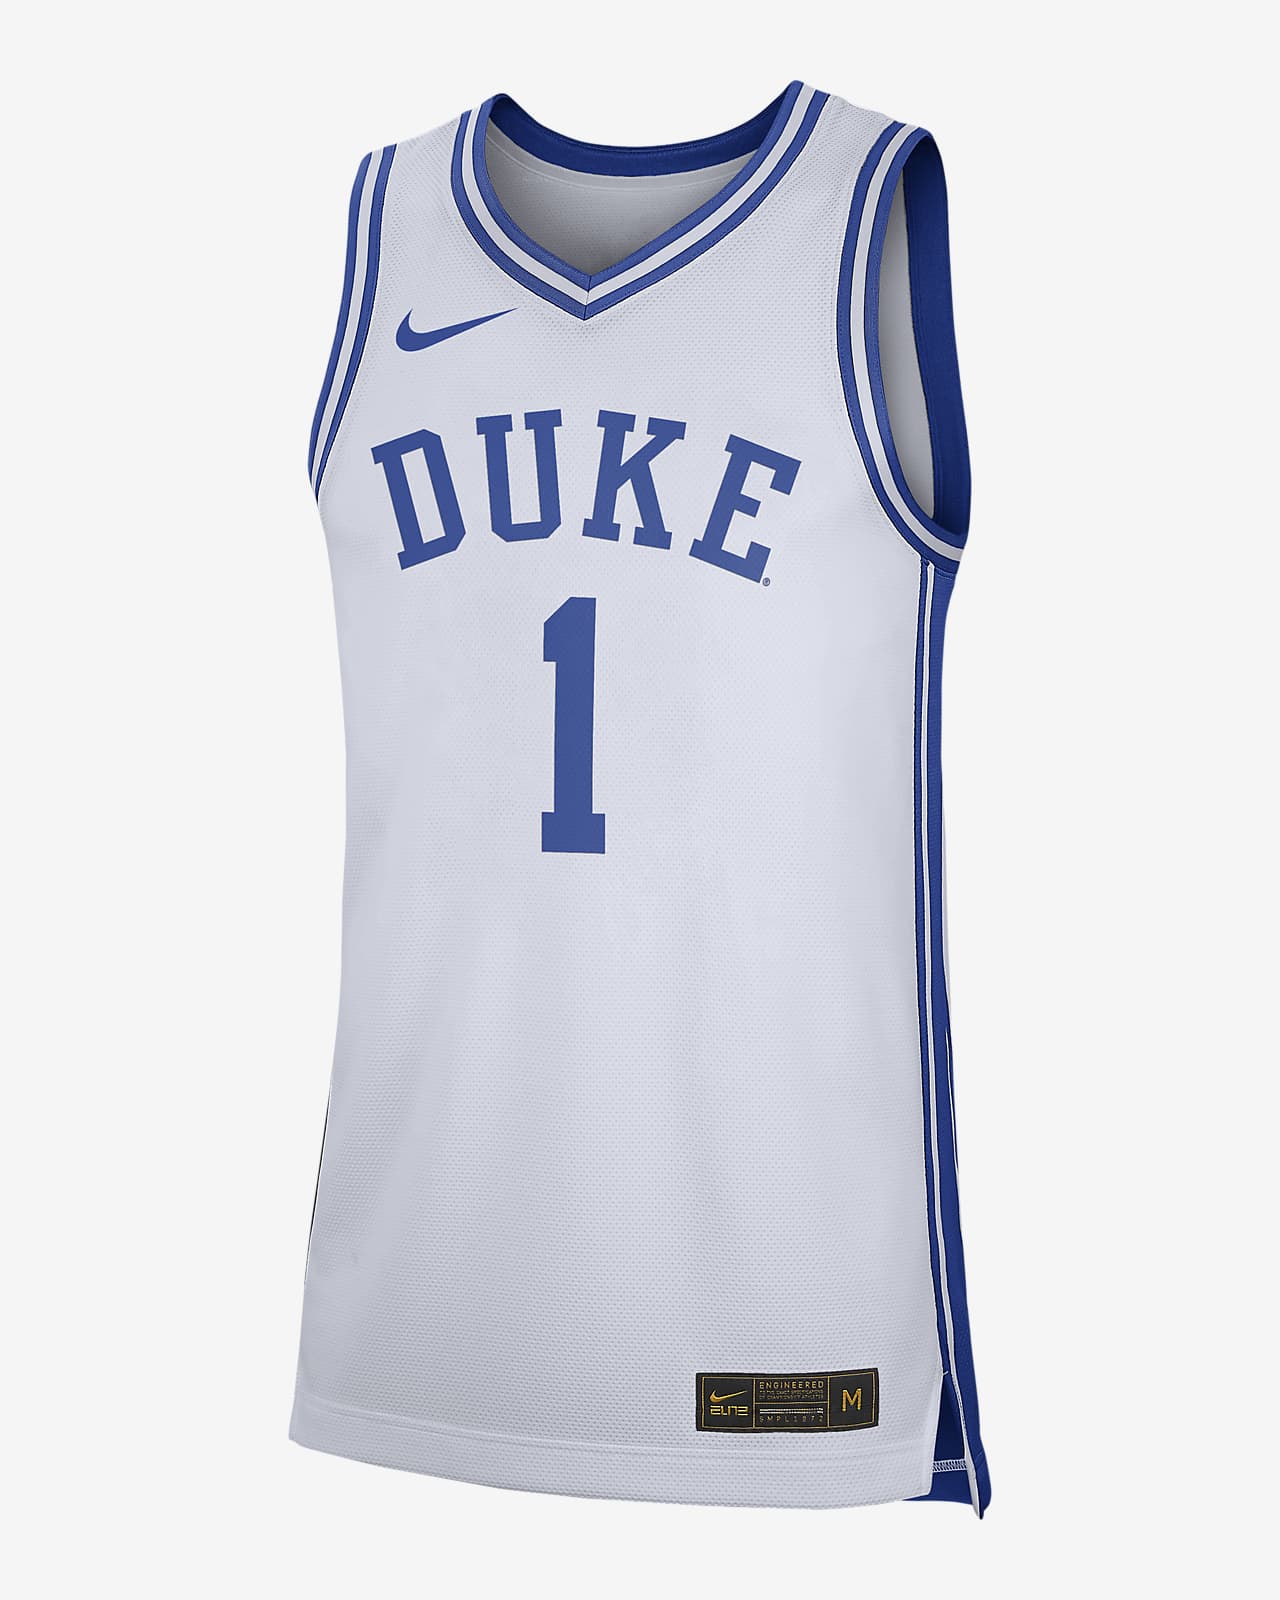 Jersey de para hombre NikeCollege Replica (Duke). Nike.com